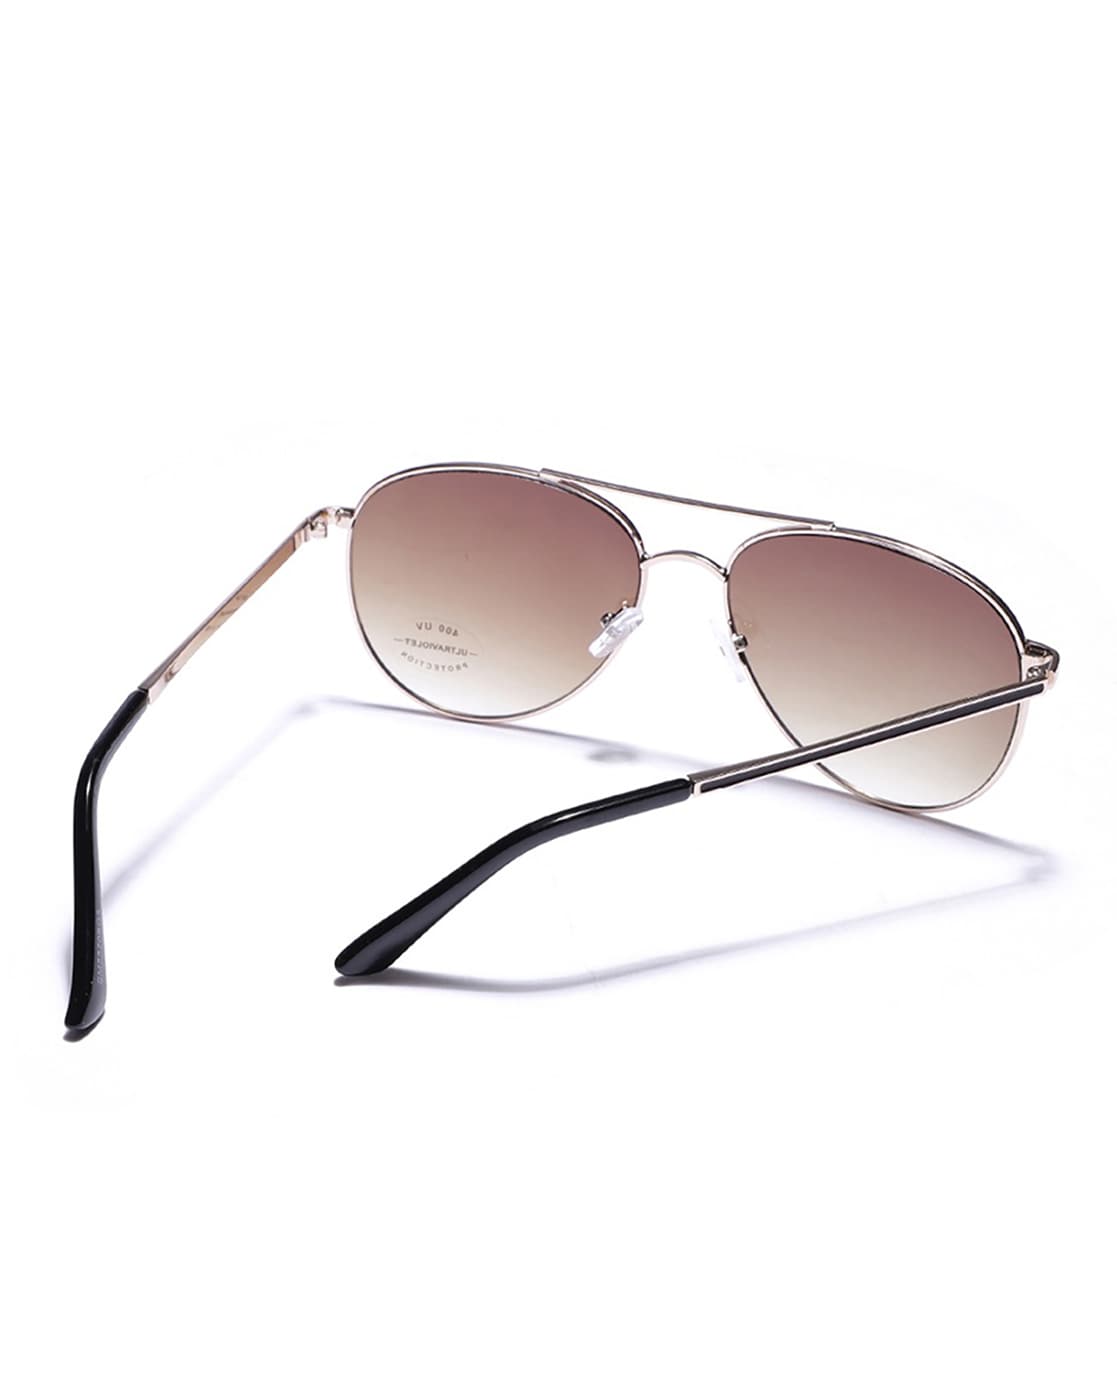 Buy Fastrack Aviator Sunglasses Brown For Women Online @ Best Prices in  India | Flipkart.com